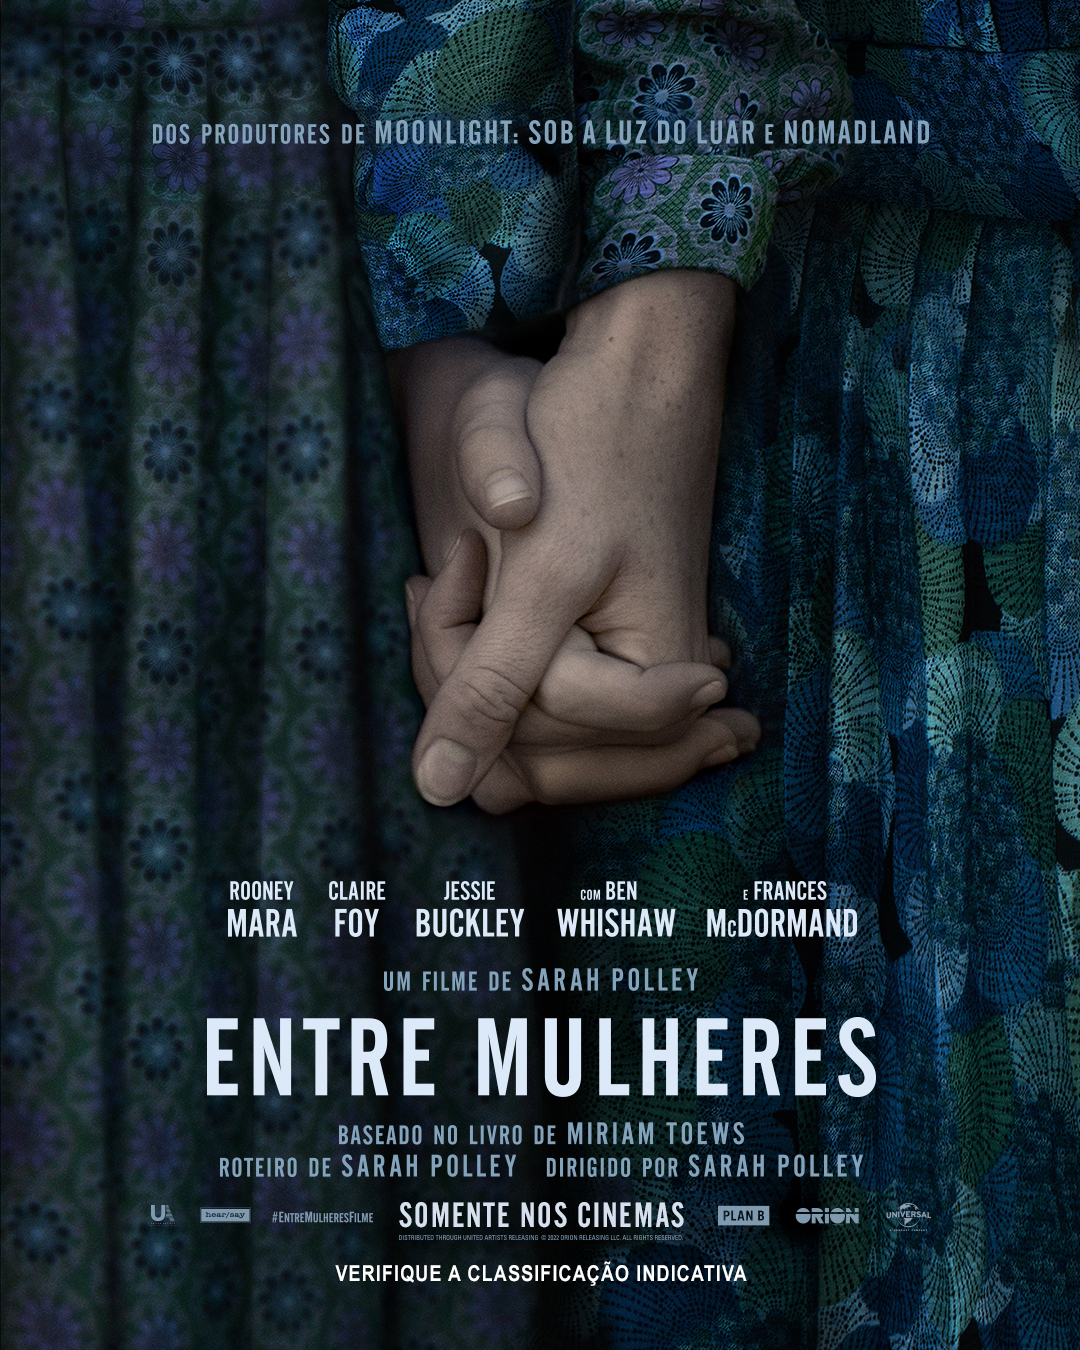 Universal Pictures divulga pôster e primeiro trailer de “Entre Mulheres” |  AToupeira